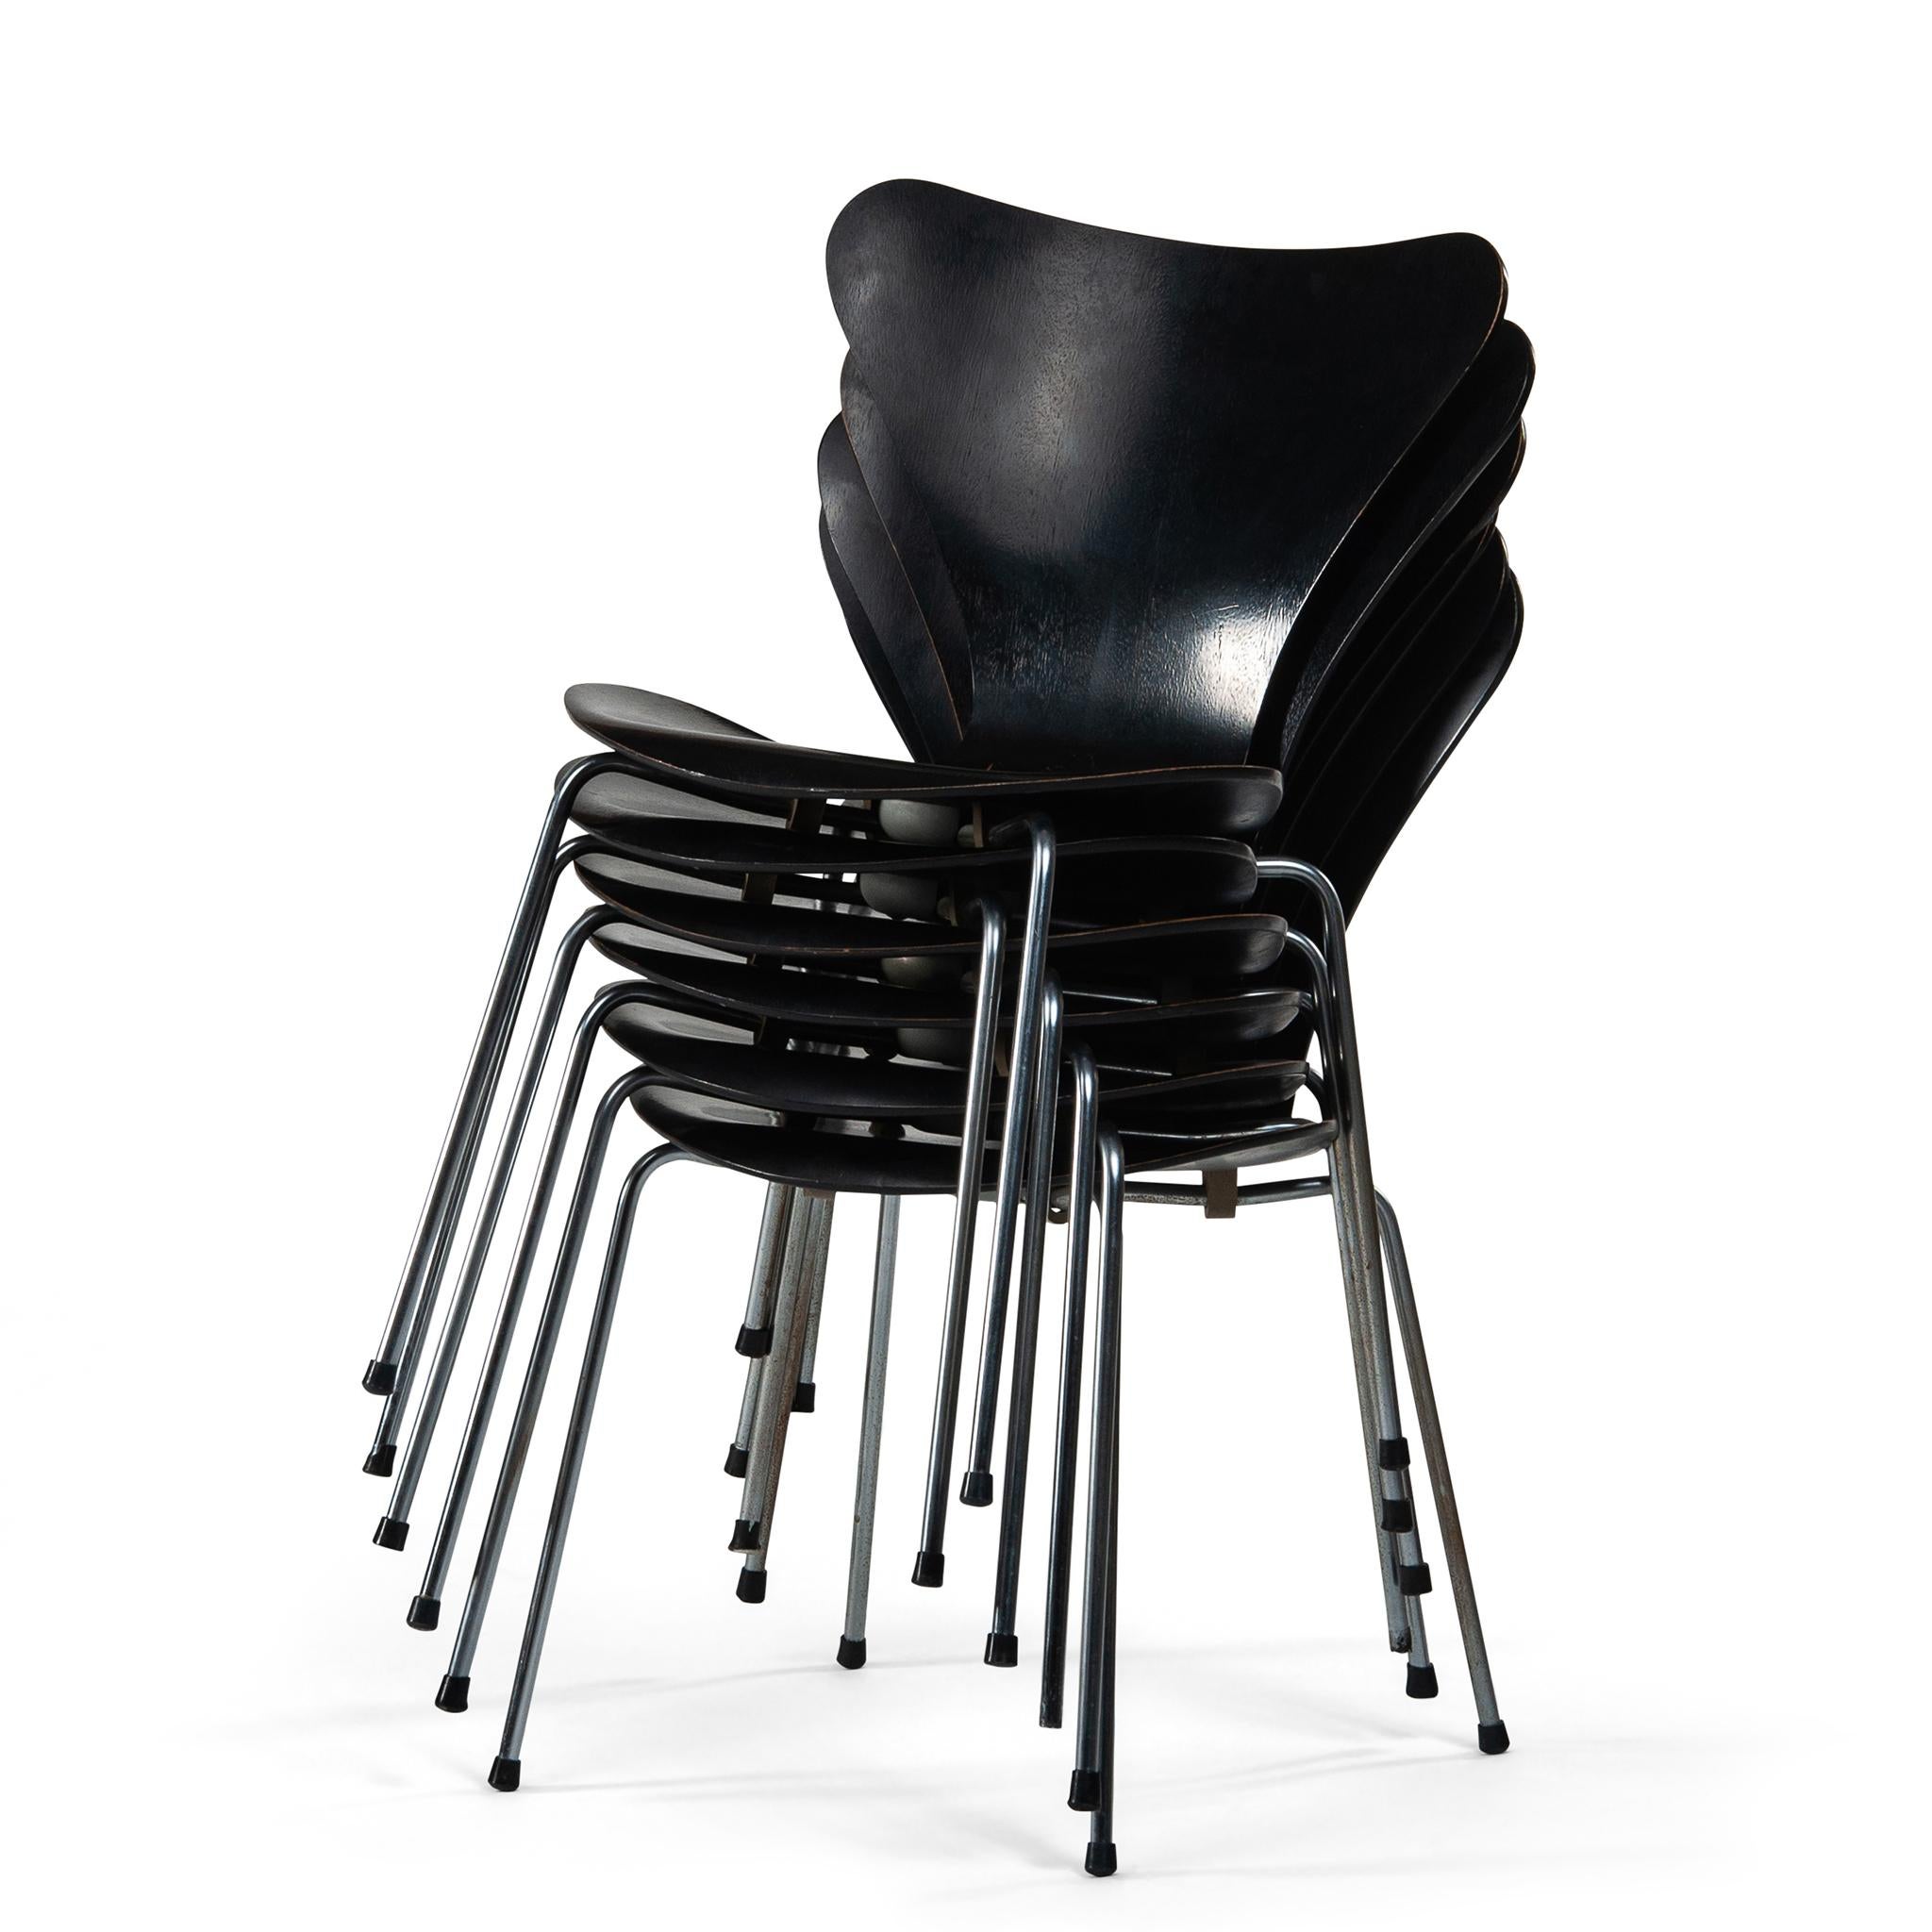 Les chaises de la série 7, également connues sous le nom de modèle 3107, sont un chef-d'œuvre du design du milieu du siècle. Créées par le célèbre designer danois Arne Jacobsen pour Fritz Hansen en 1955, ces chaises sont devenues un symbole